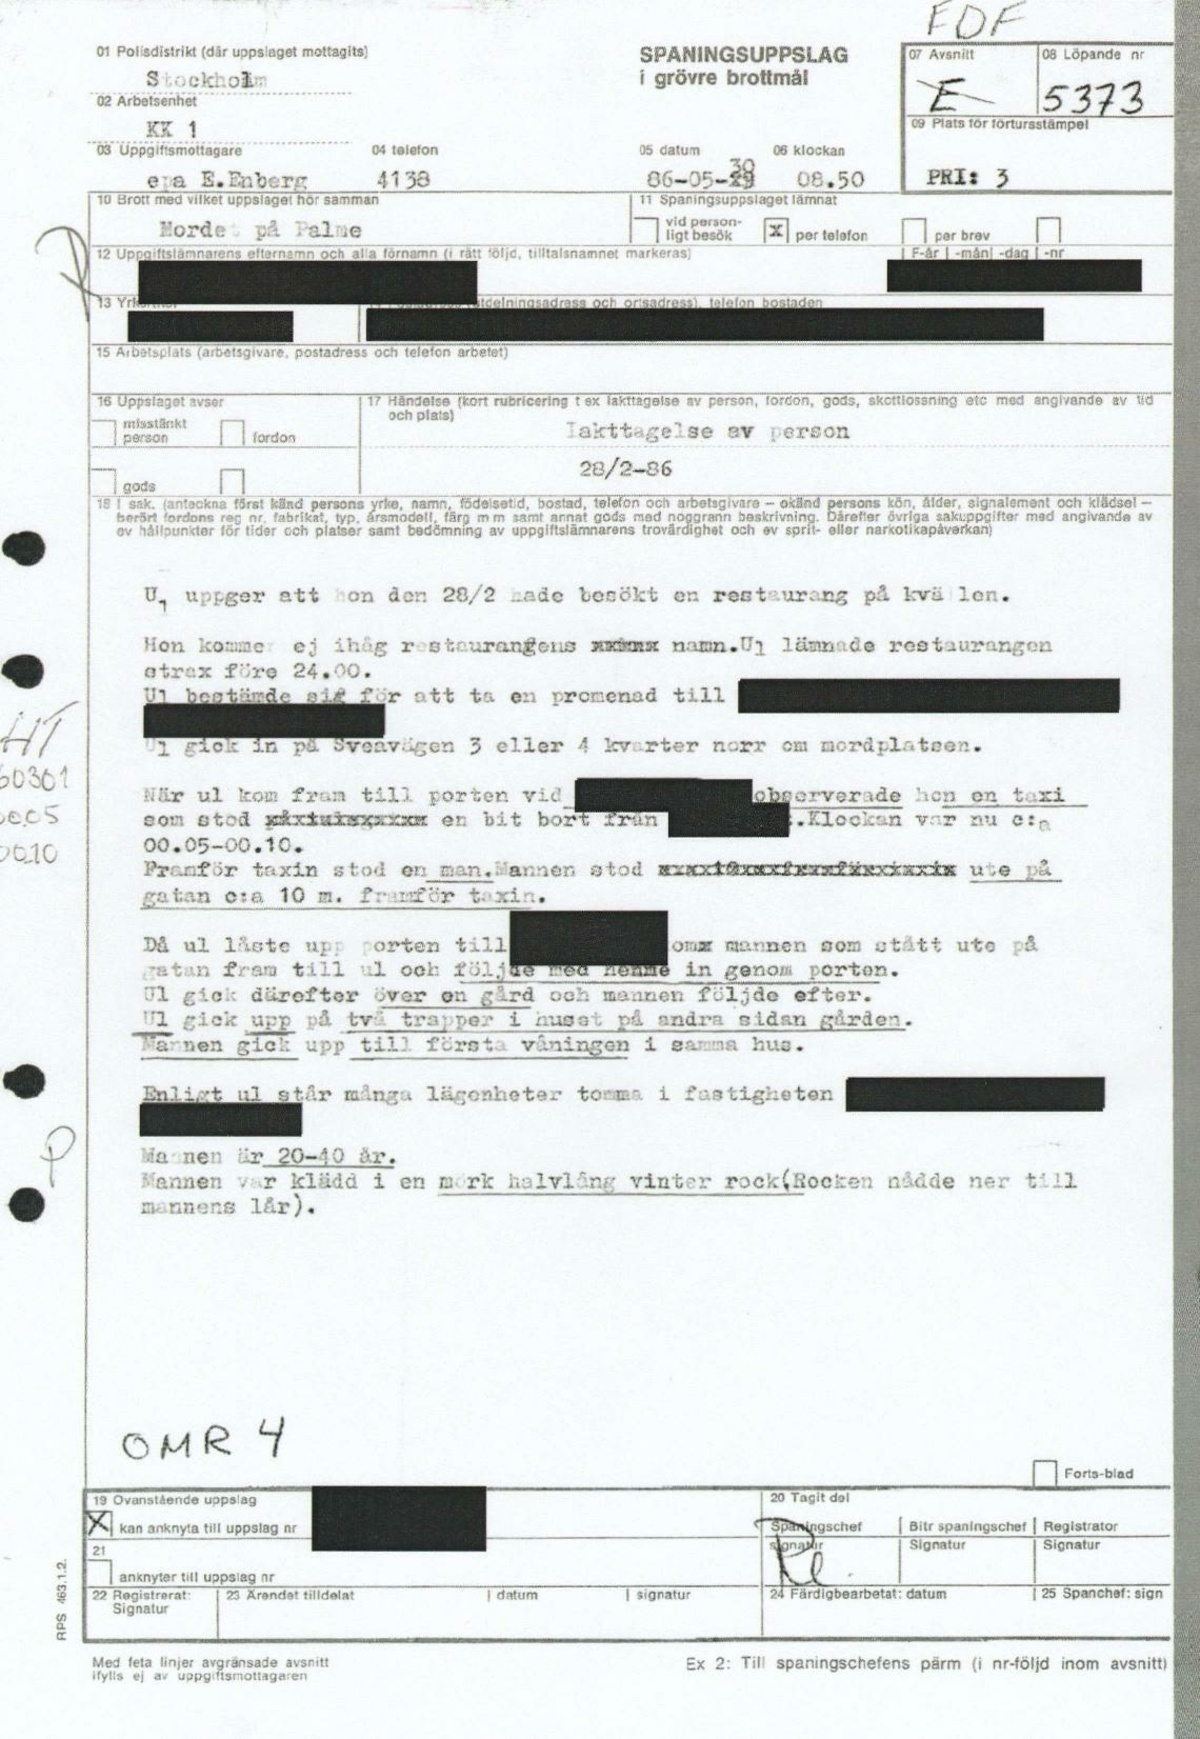 Pol-1986-05-29 EDF5373-00 Iakttagelse-av-man-Sveavägen.pdf